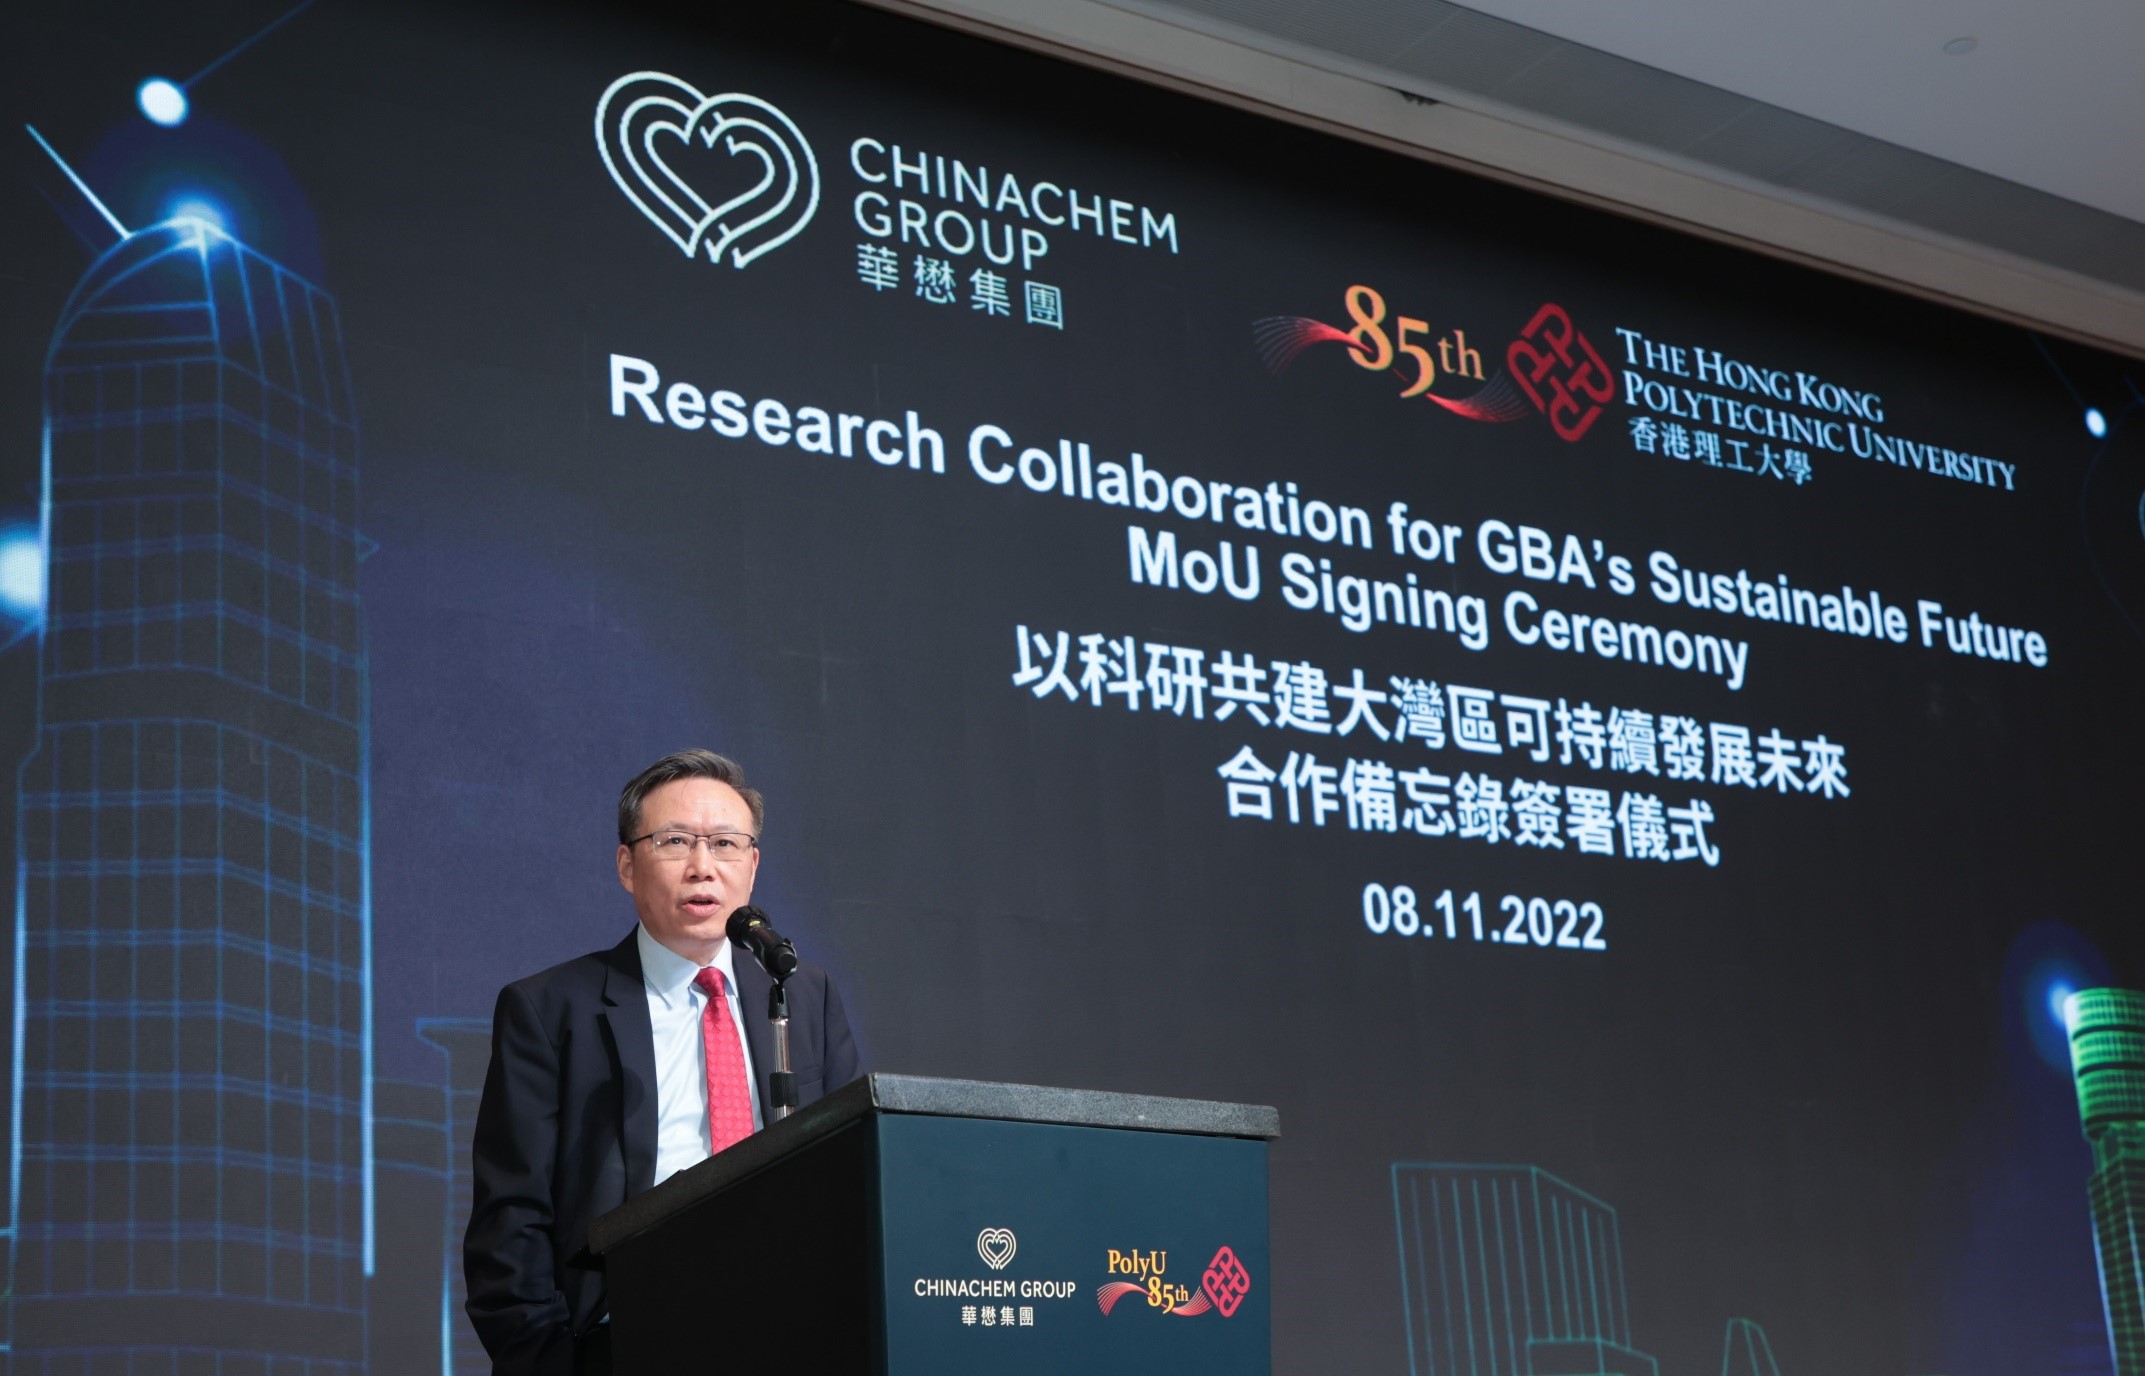 滕錦光教授指理大將繼續積極與合作夥伴和社會各 界共同努力，將科研成果轉化為實際的應用方案，為 香港、國家及世界建造更宜居及可持續發展的社區。